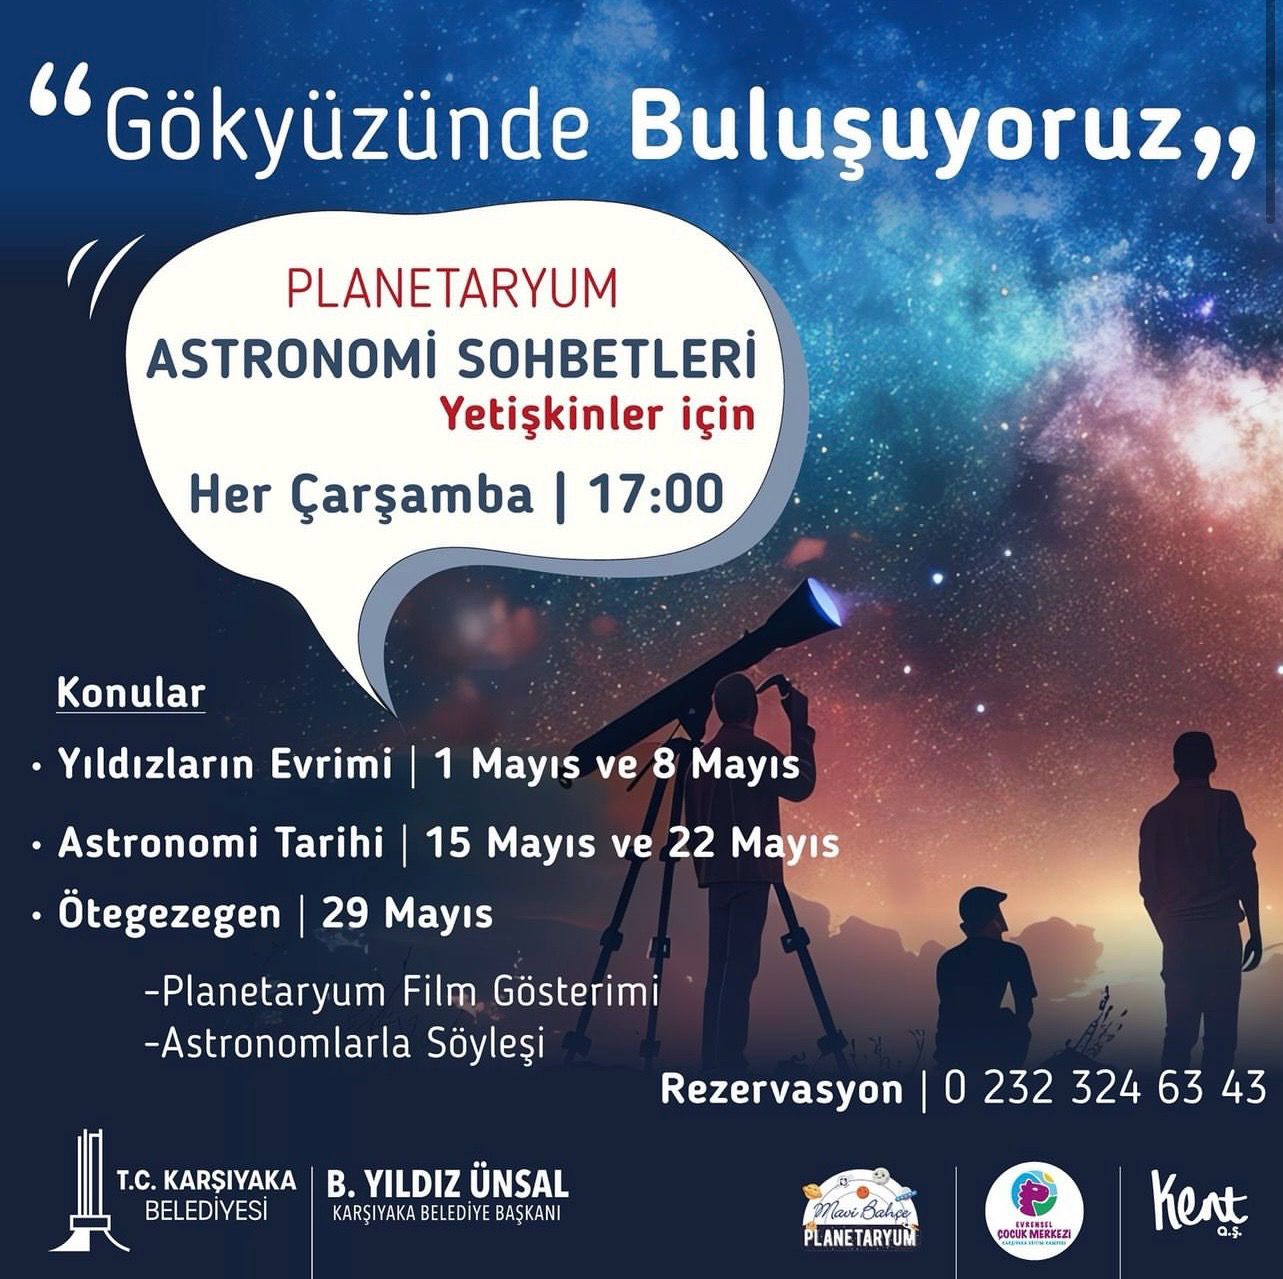 Karşıyaka Belediyesi Karşıyaka Belediyesi tarafından kente kazandırılan planetaryumda astronomi sohbetleri gerçekleştirilecek. Yetişkinlere özel olarak düzenlenen sohbetler, her çarşamba saat 17.00’de başlayacak.